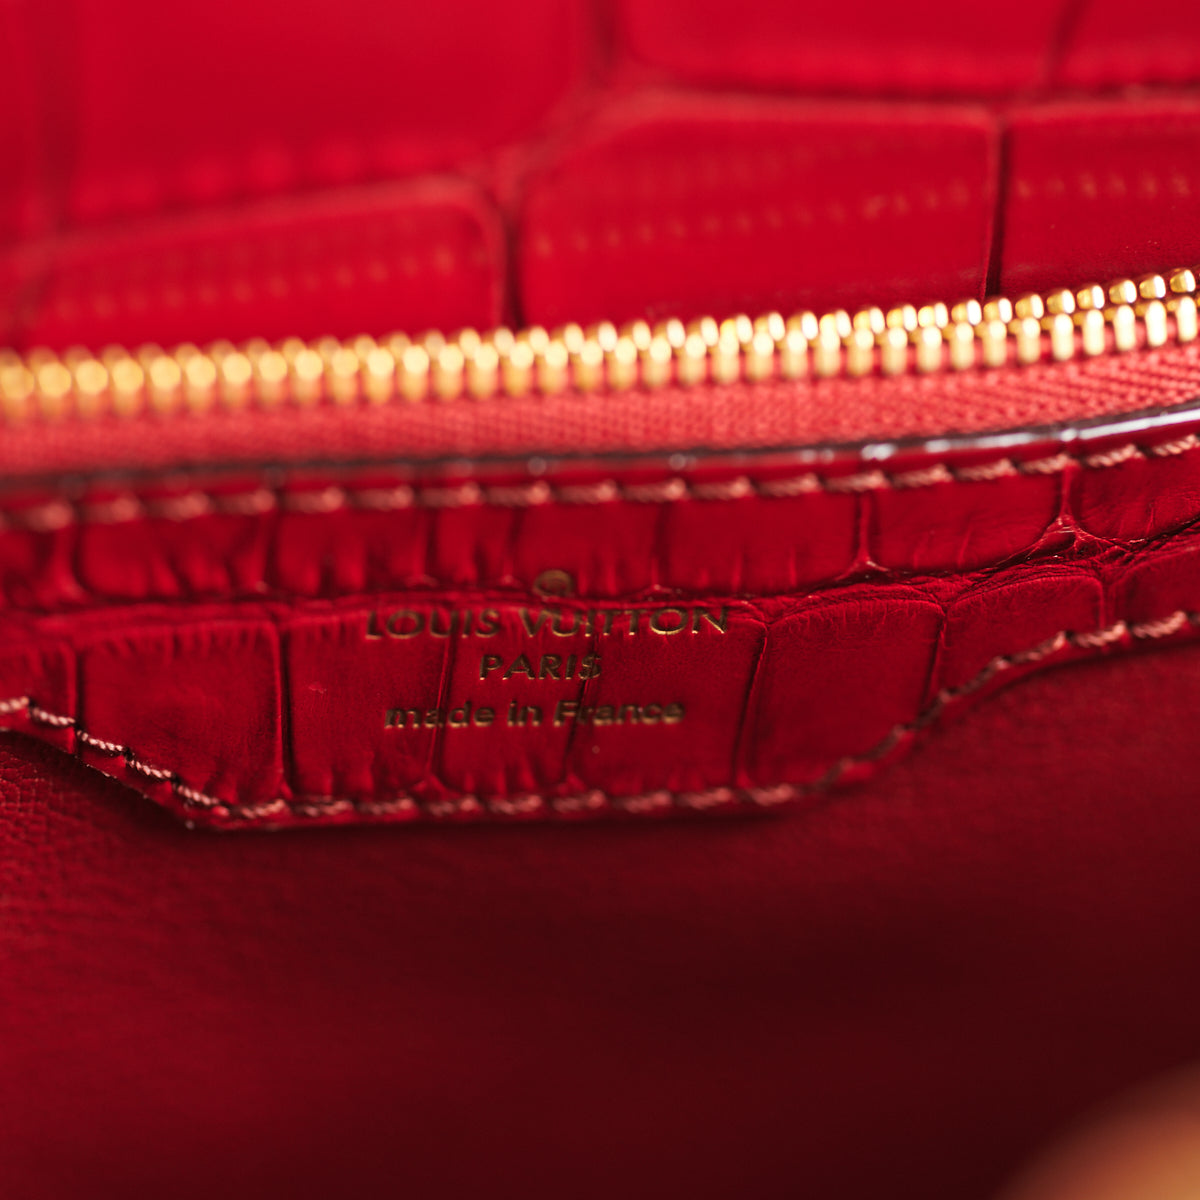 Capucines alligator handbag Louis Vuitton Pink in Alligator - 27012447